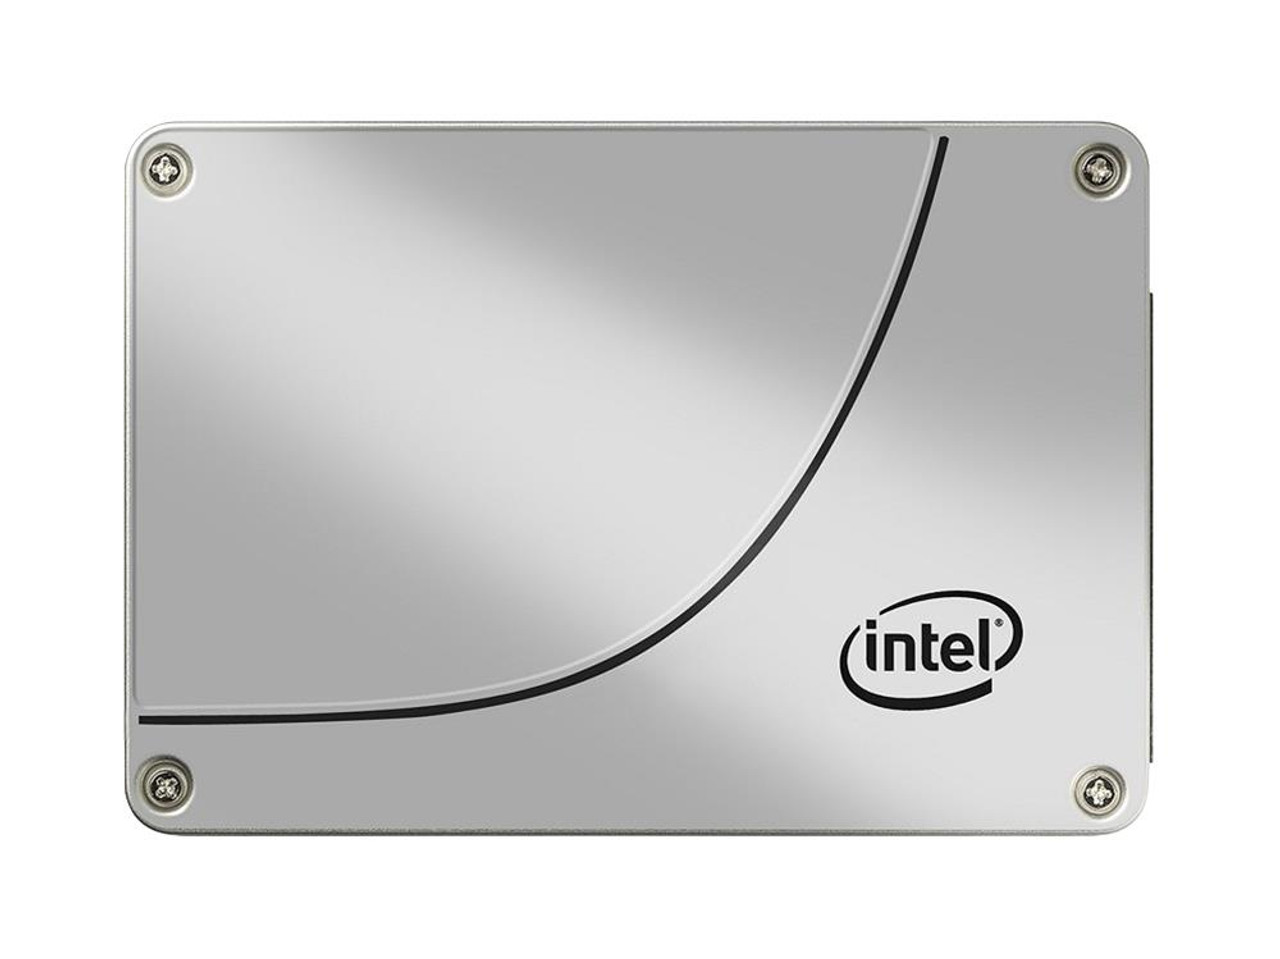 SSDSA2CT040G3K5-B2 Intel 320 Series 40GB MLC SATA 3Gbps 2.5-inch Internal Solid State Drive (SSD)